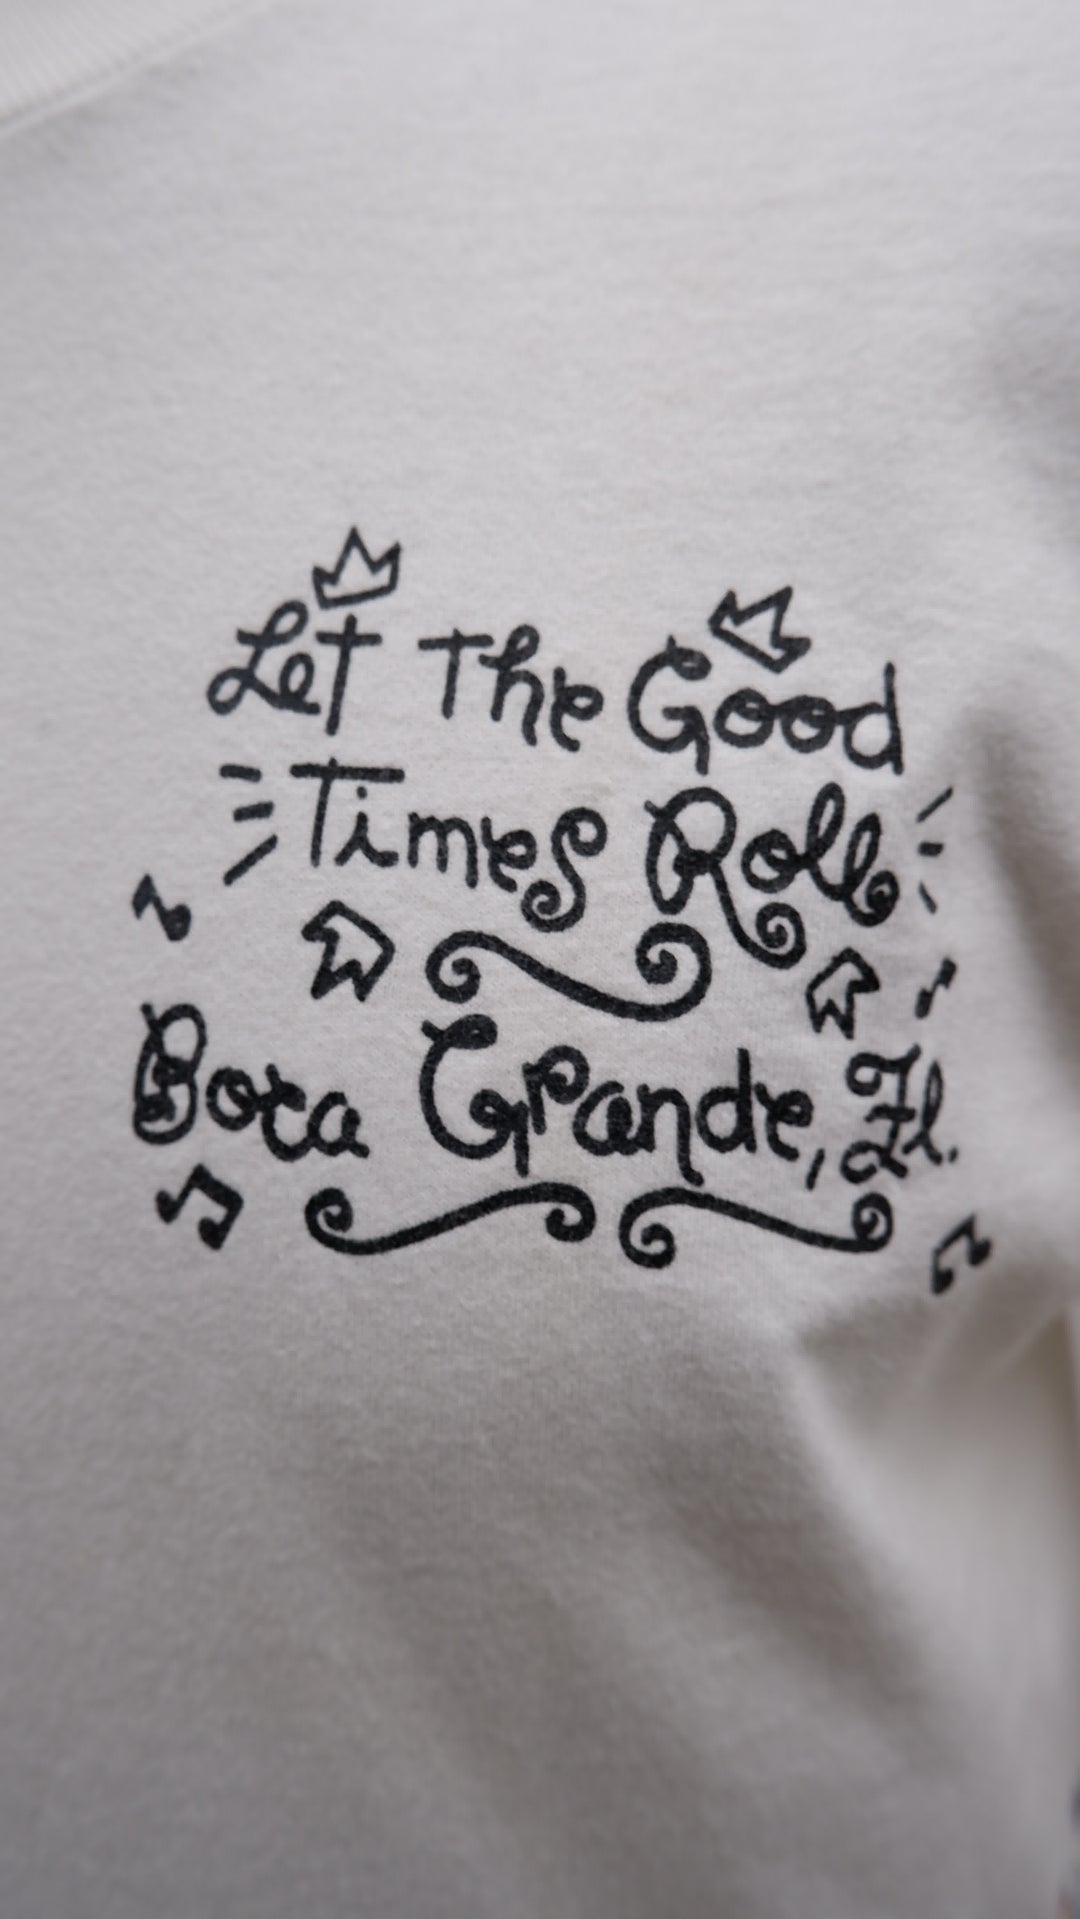 Vintage Let The Good Times Roll Boca Grande Festival T-Shirt